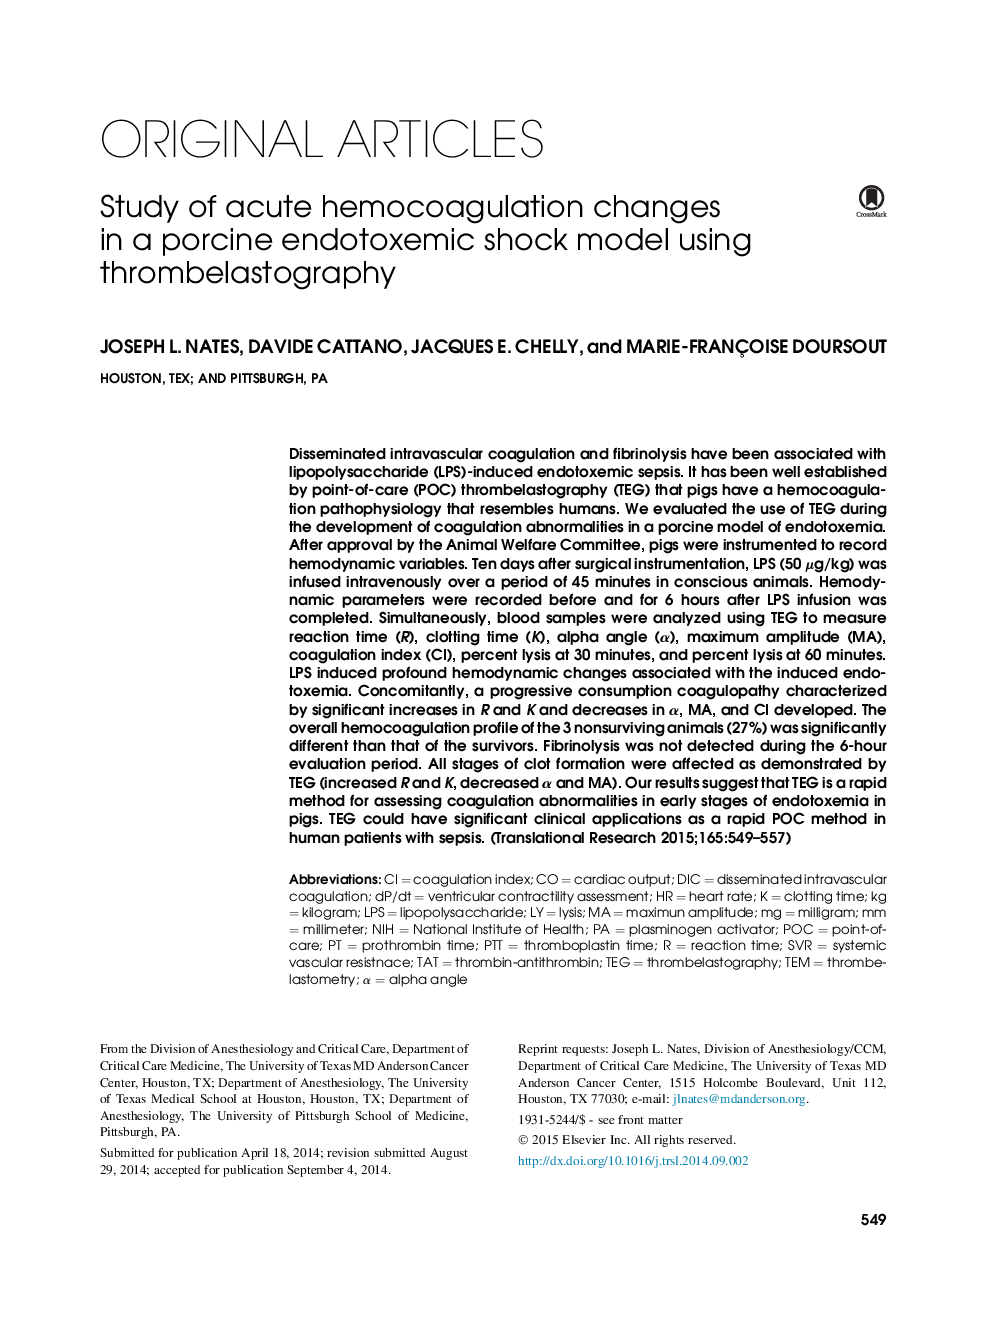 بررسی تغییرات حاد هموکوآگولاسیون در مدل شوک های آندوکسیکسیک گوسفند با استفاده از ترومبلاستوگرافی 